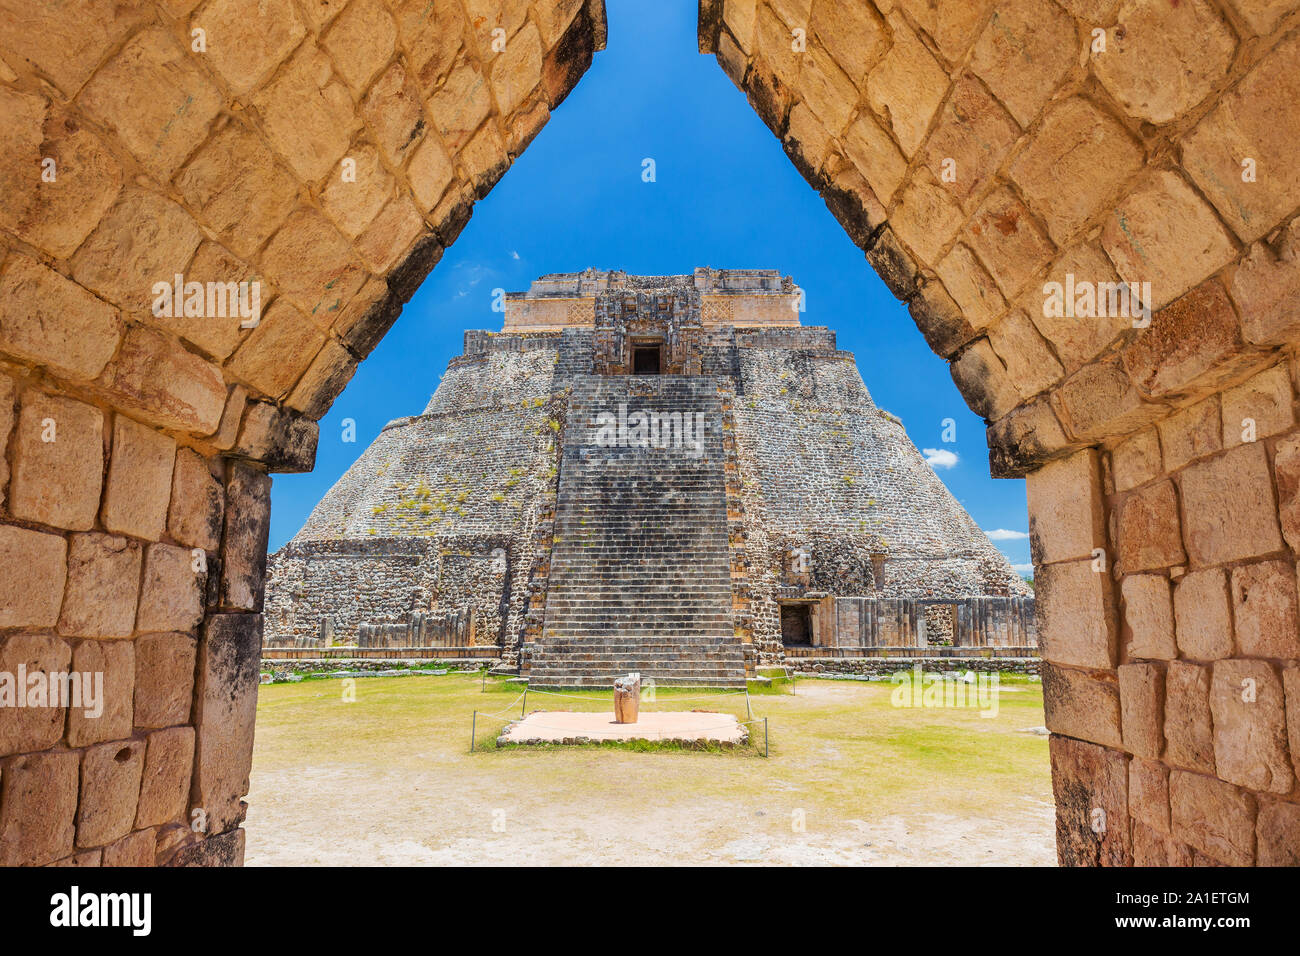 Uxmal, México. Pirámide del Mago en la antigua ciudad maya. Foto de stock